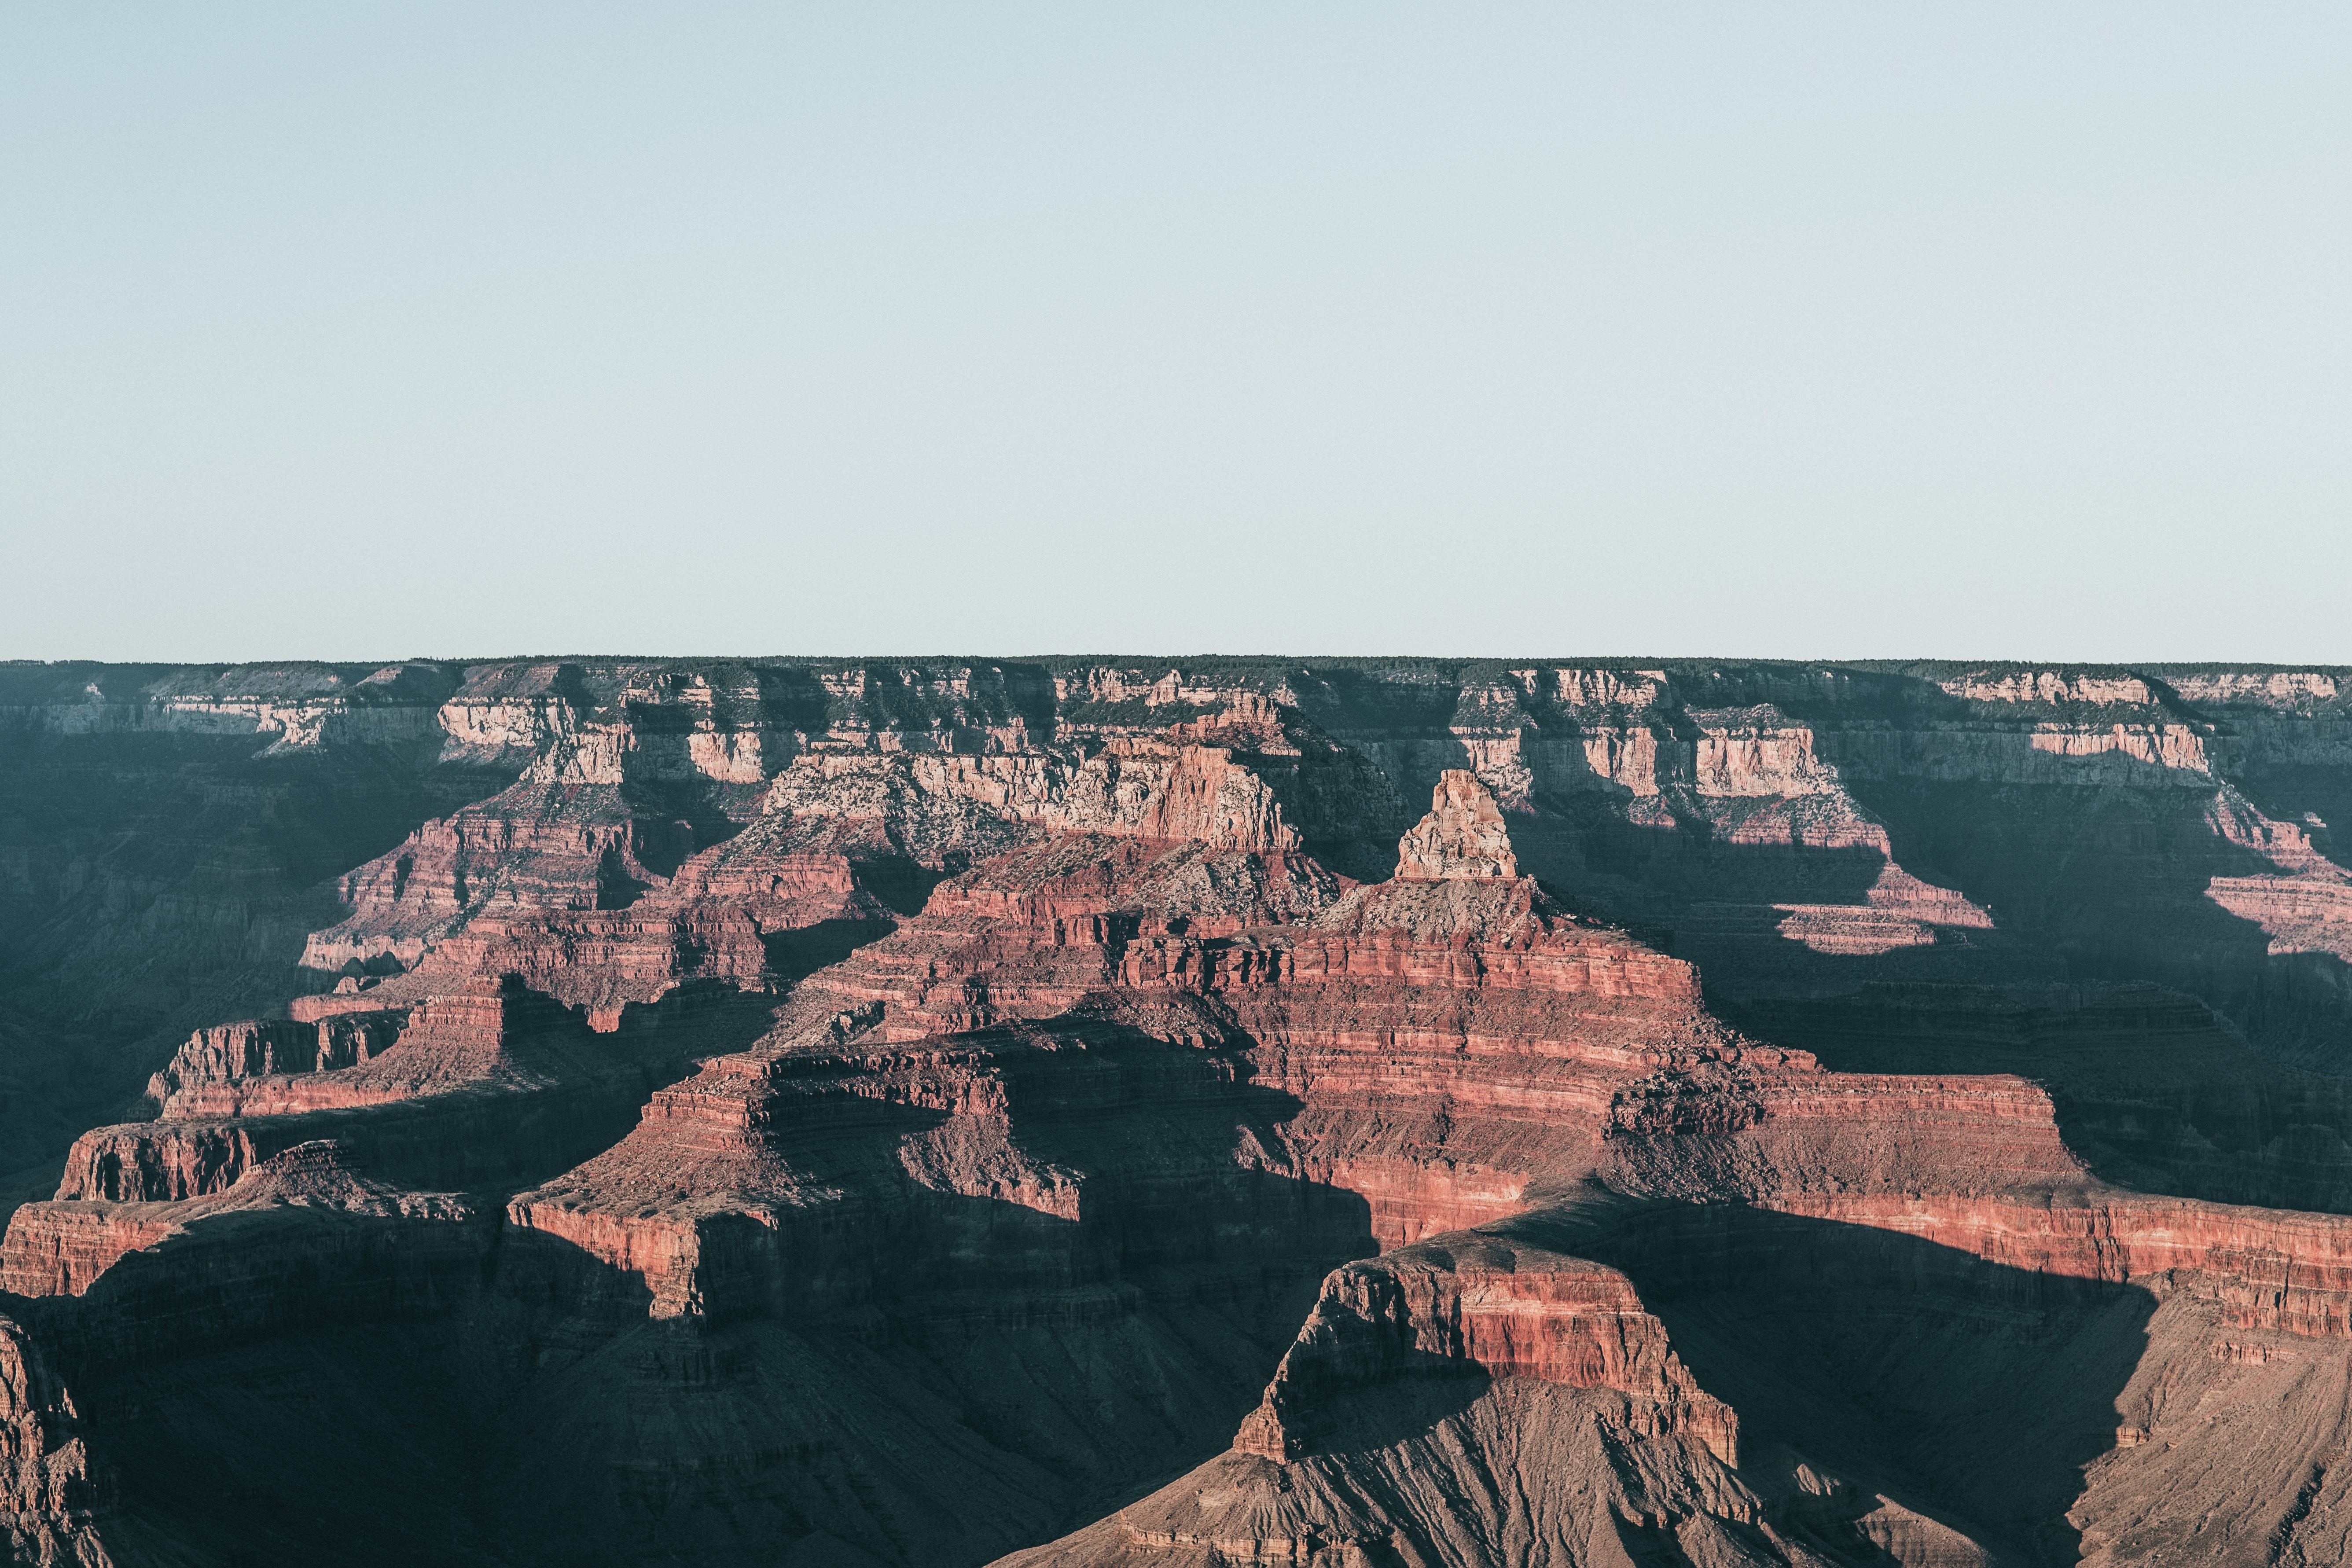 Foto do plano de fundo do Grand Canyon eua